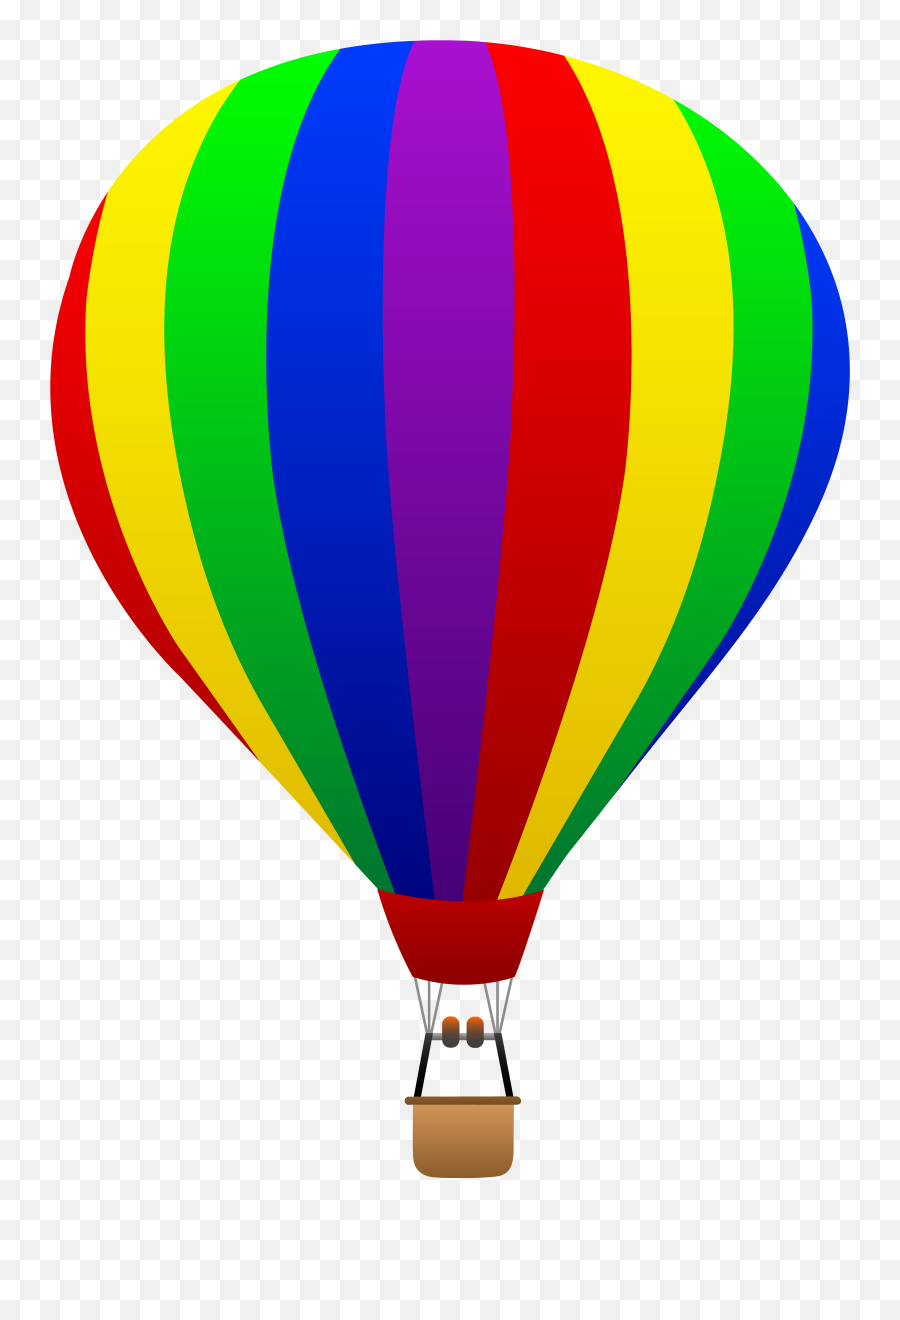 Free Clip Art Of A Fun Rainbow Striped Hot Air Balloon - Parachute Clipart Emoji,Hot Air Balloon Emoji